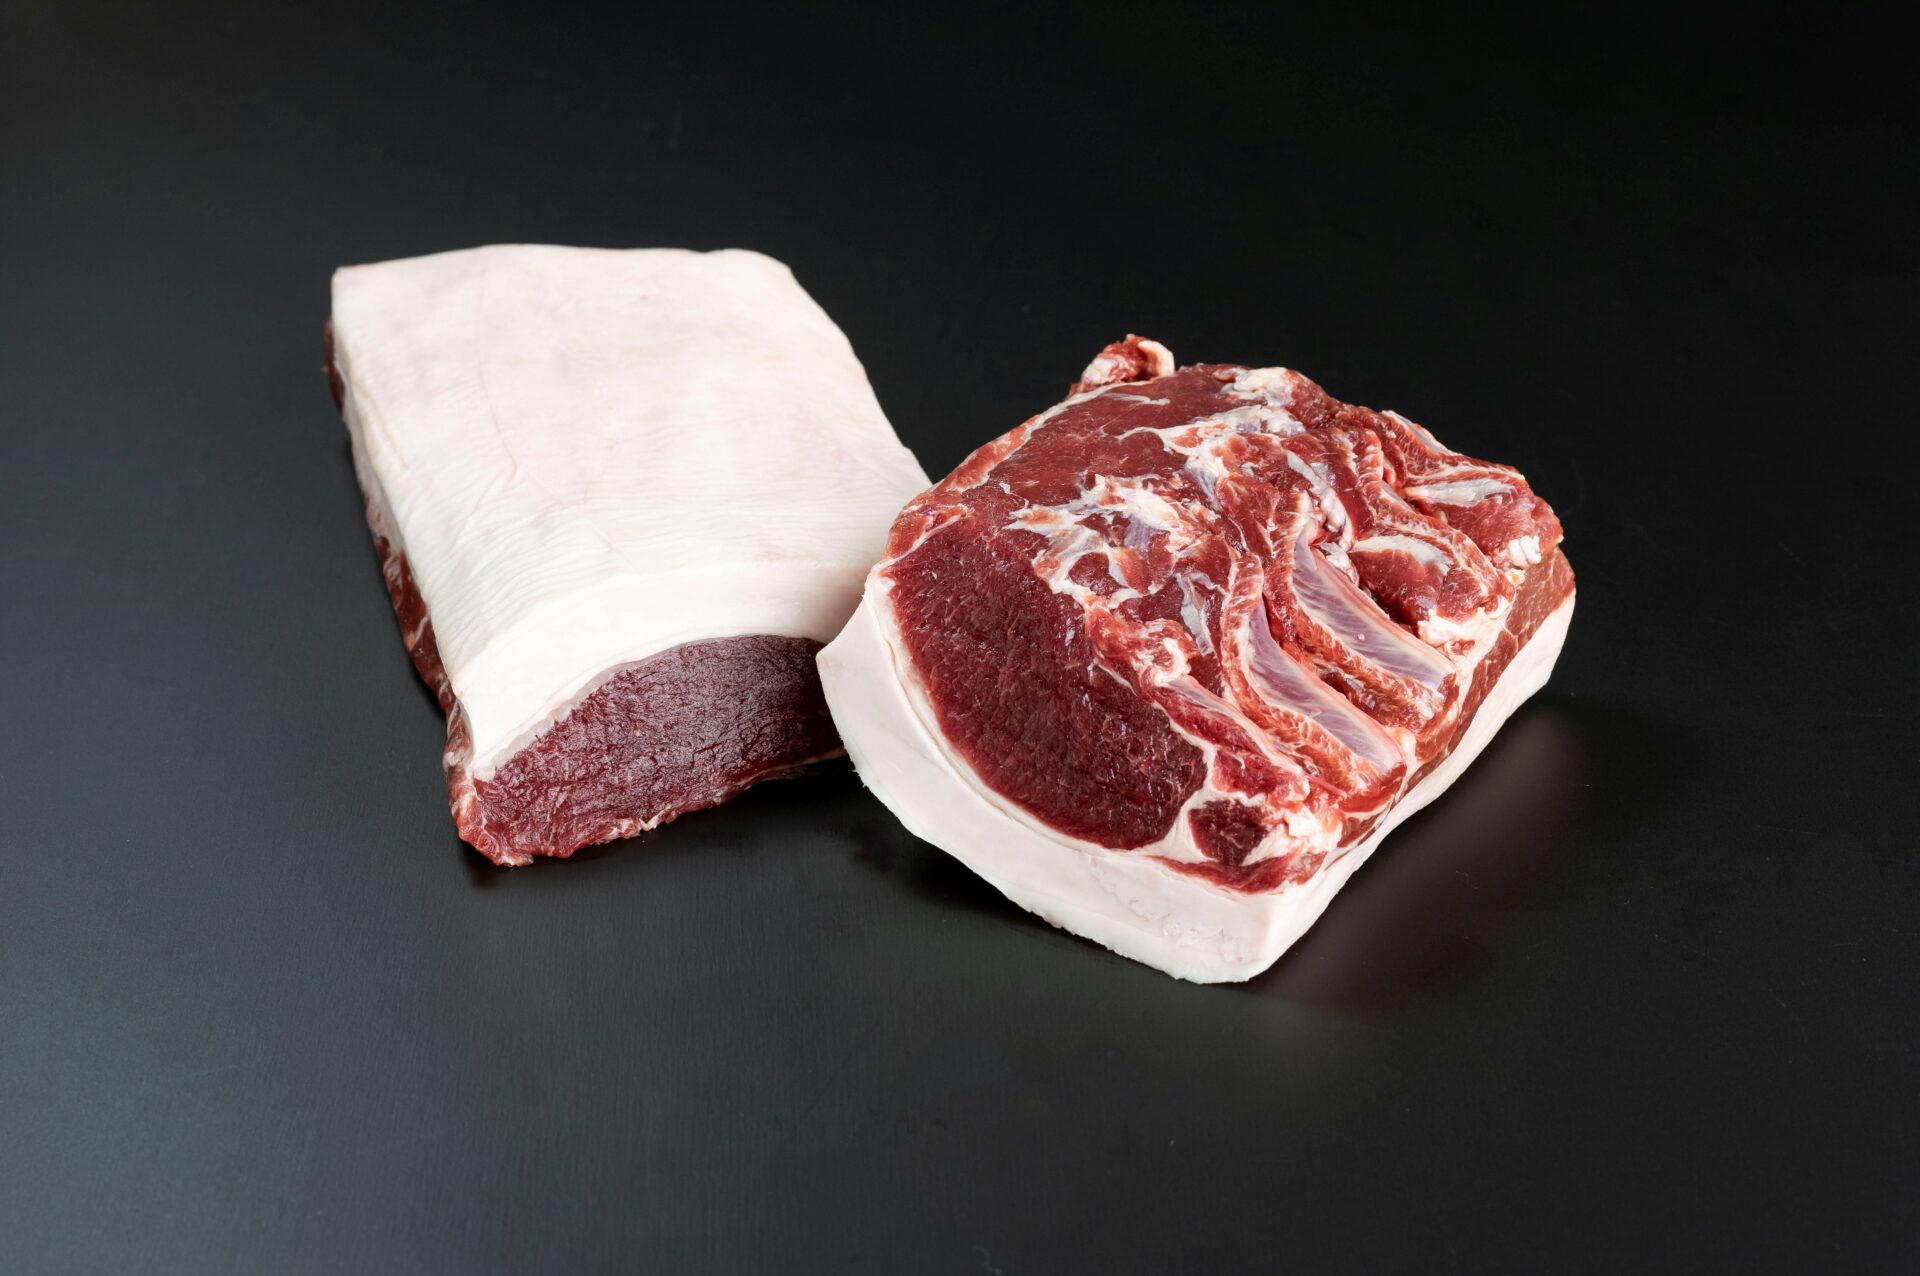 Newジビエ平戸いのしし上撰ロースブロック肉 1.8kg以上 image3